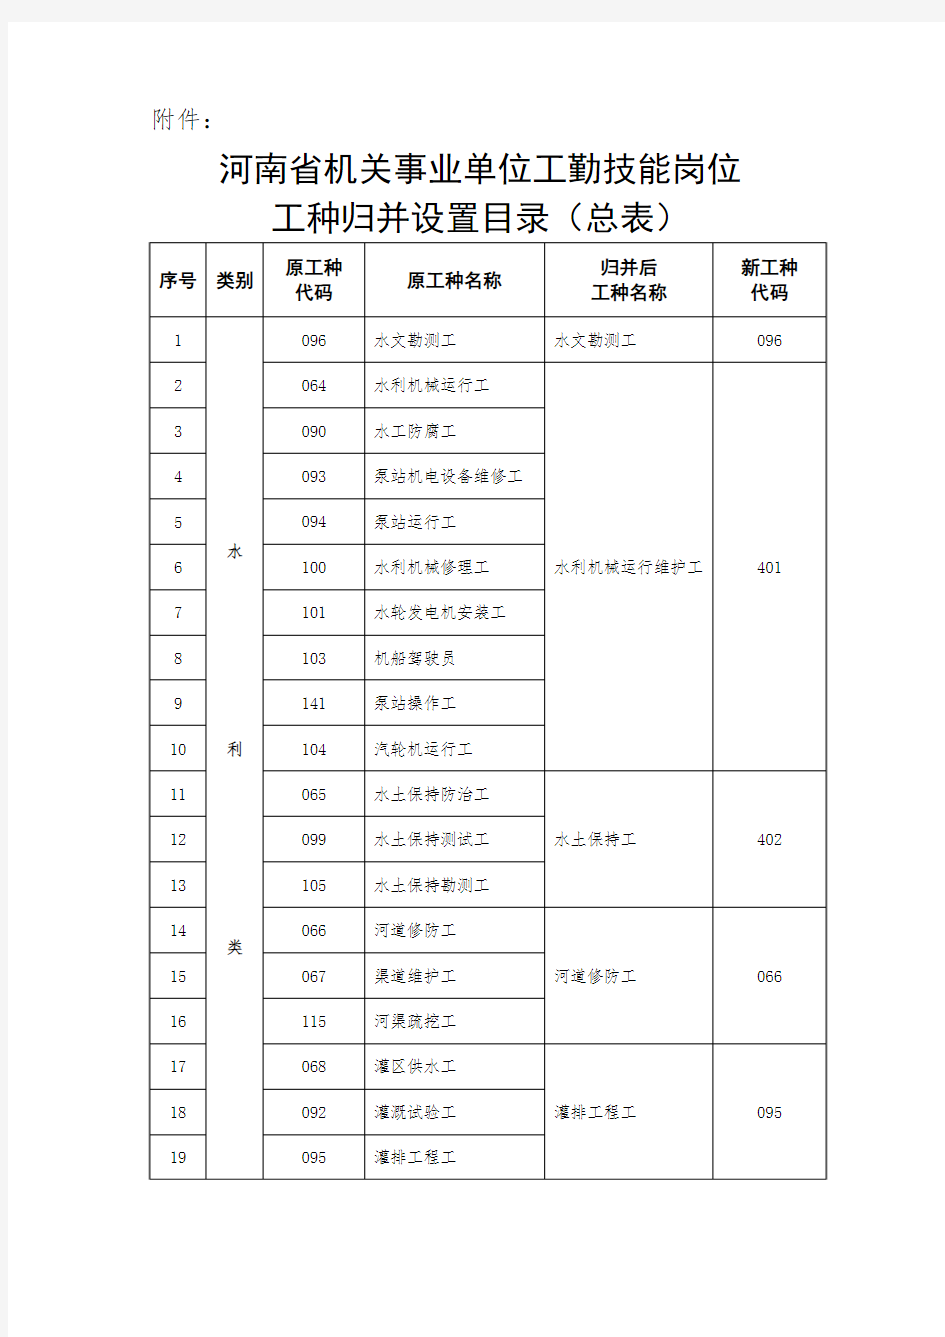 河南省机关事业单位工勤技能岗位工种归并设置目录(总表)